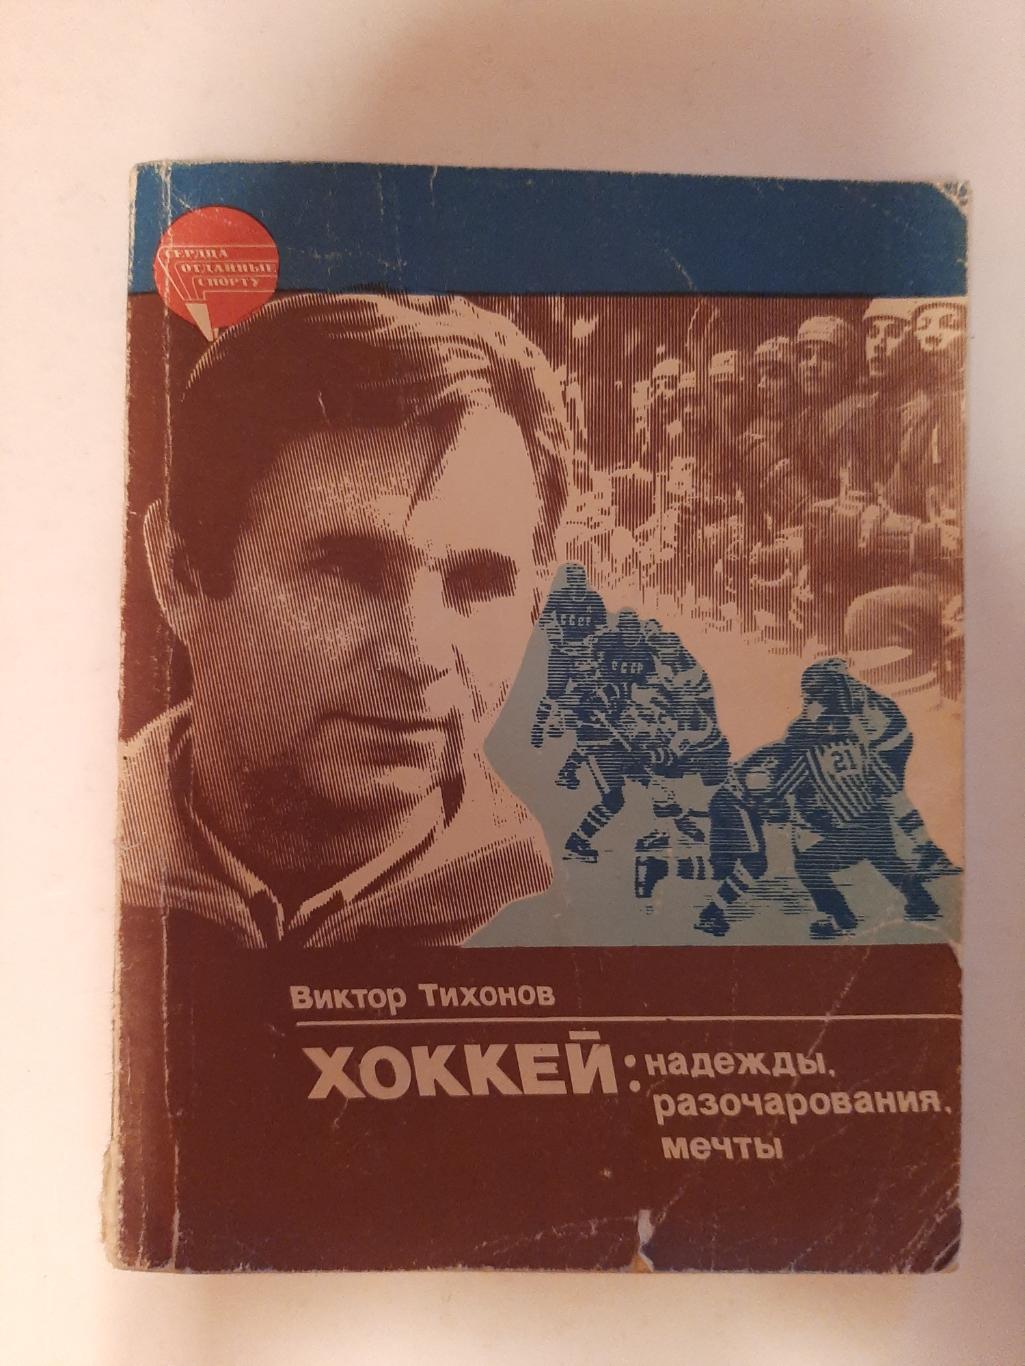 Тихонов В. В. Хоккей: надежды, разочарования, мечты 1985